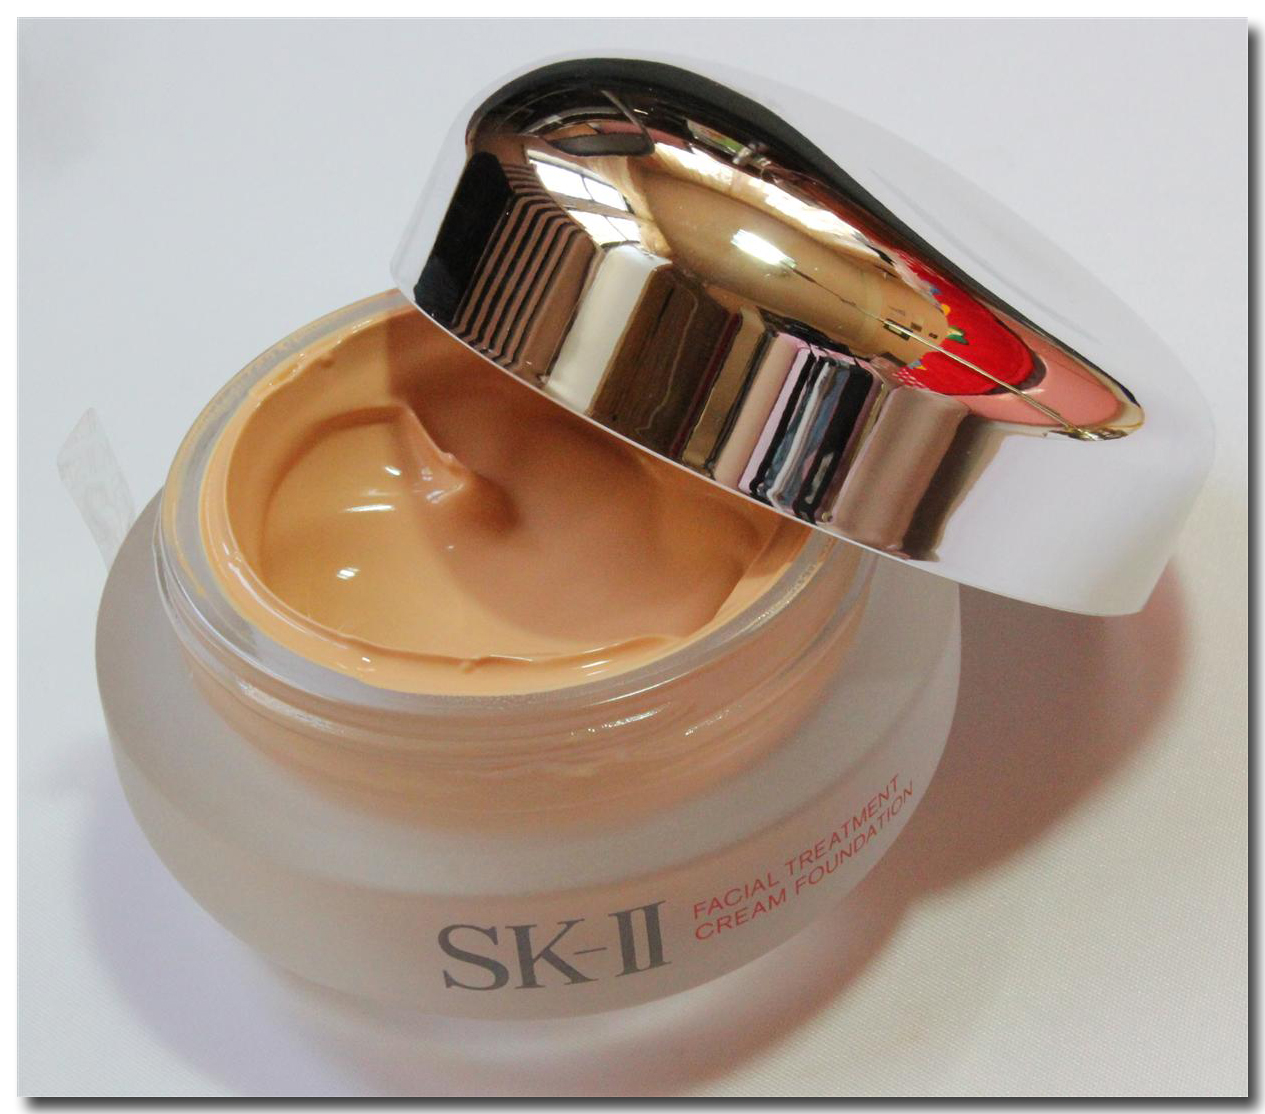 SK-II-Skincare-Facial-Treatment-Cream-Foundation-Kem-Nen